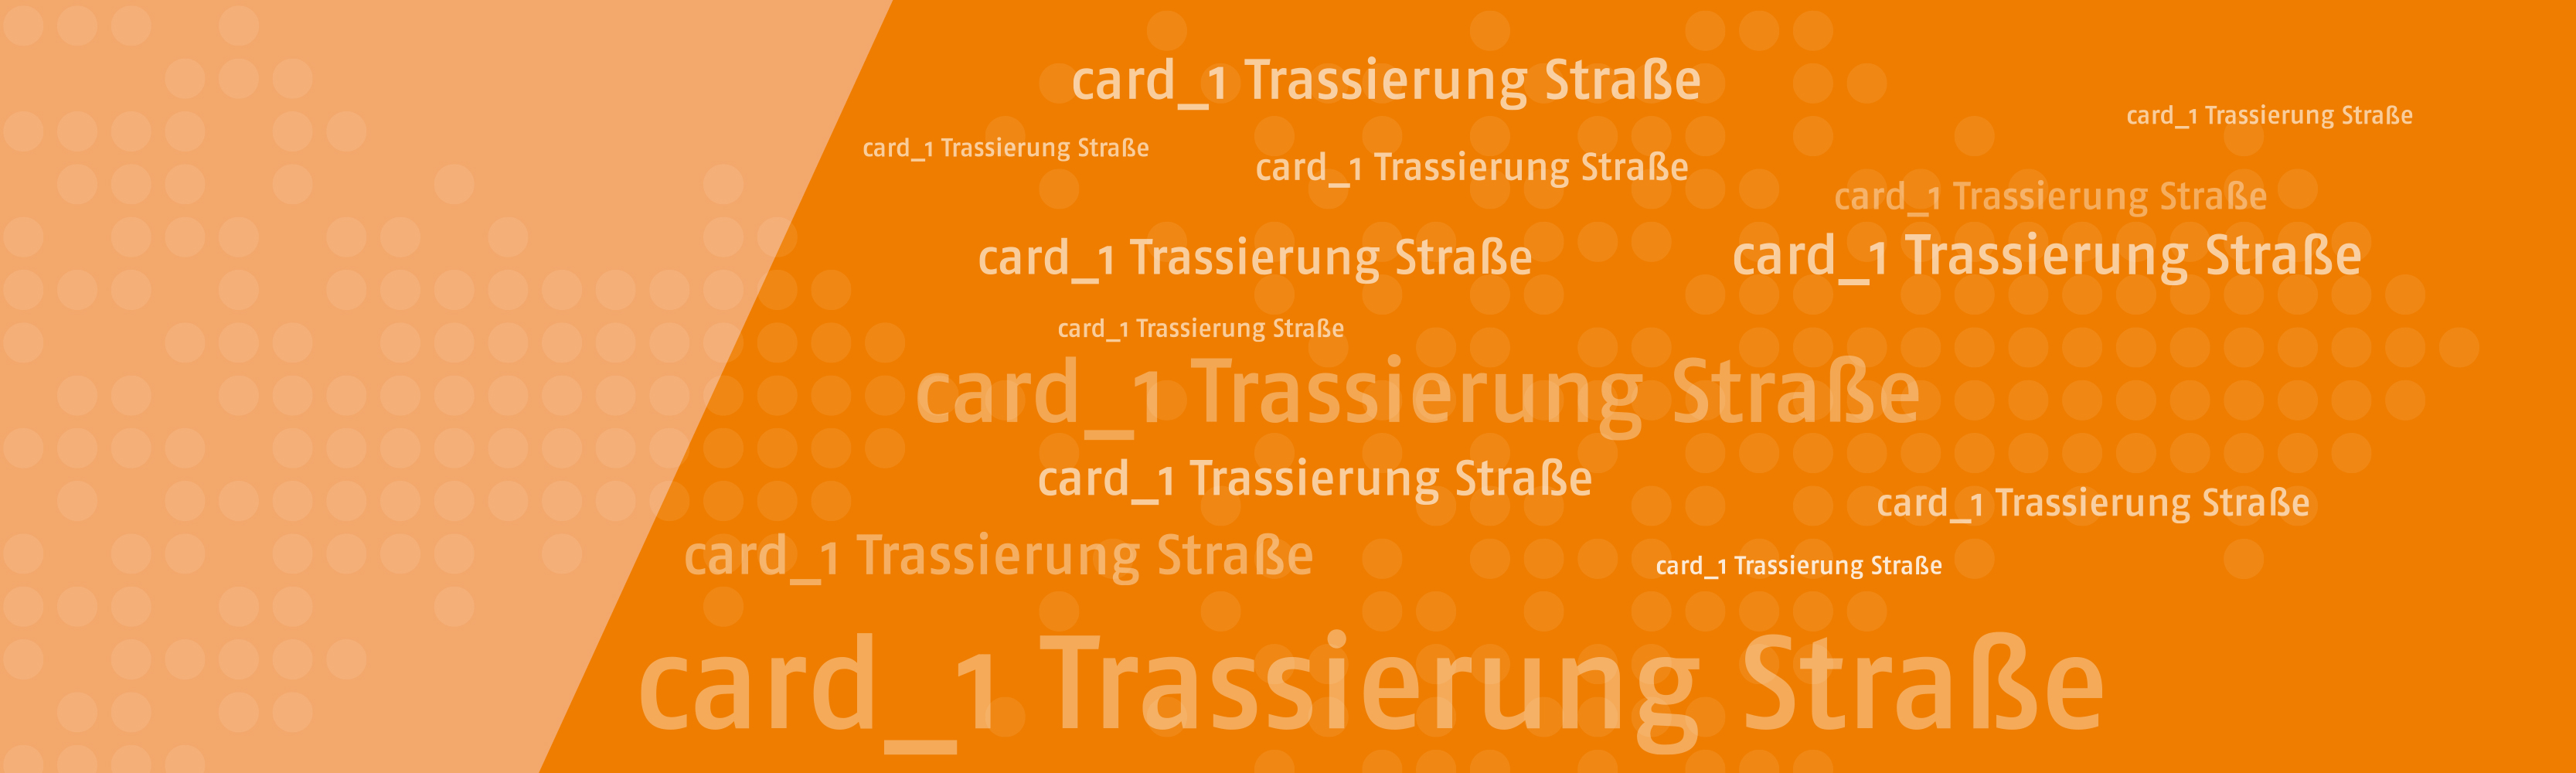 Course Image card_1 Trassierung Straße